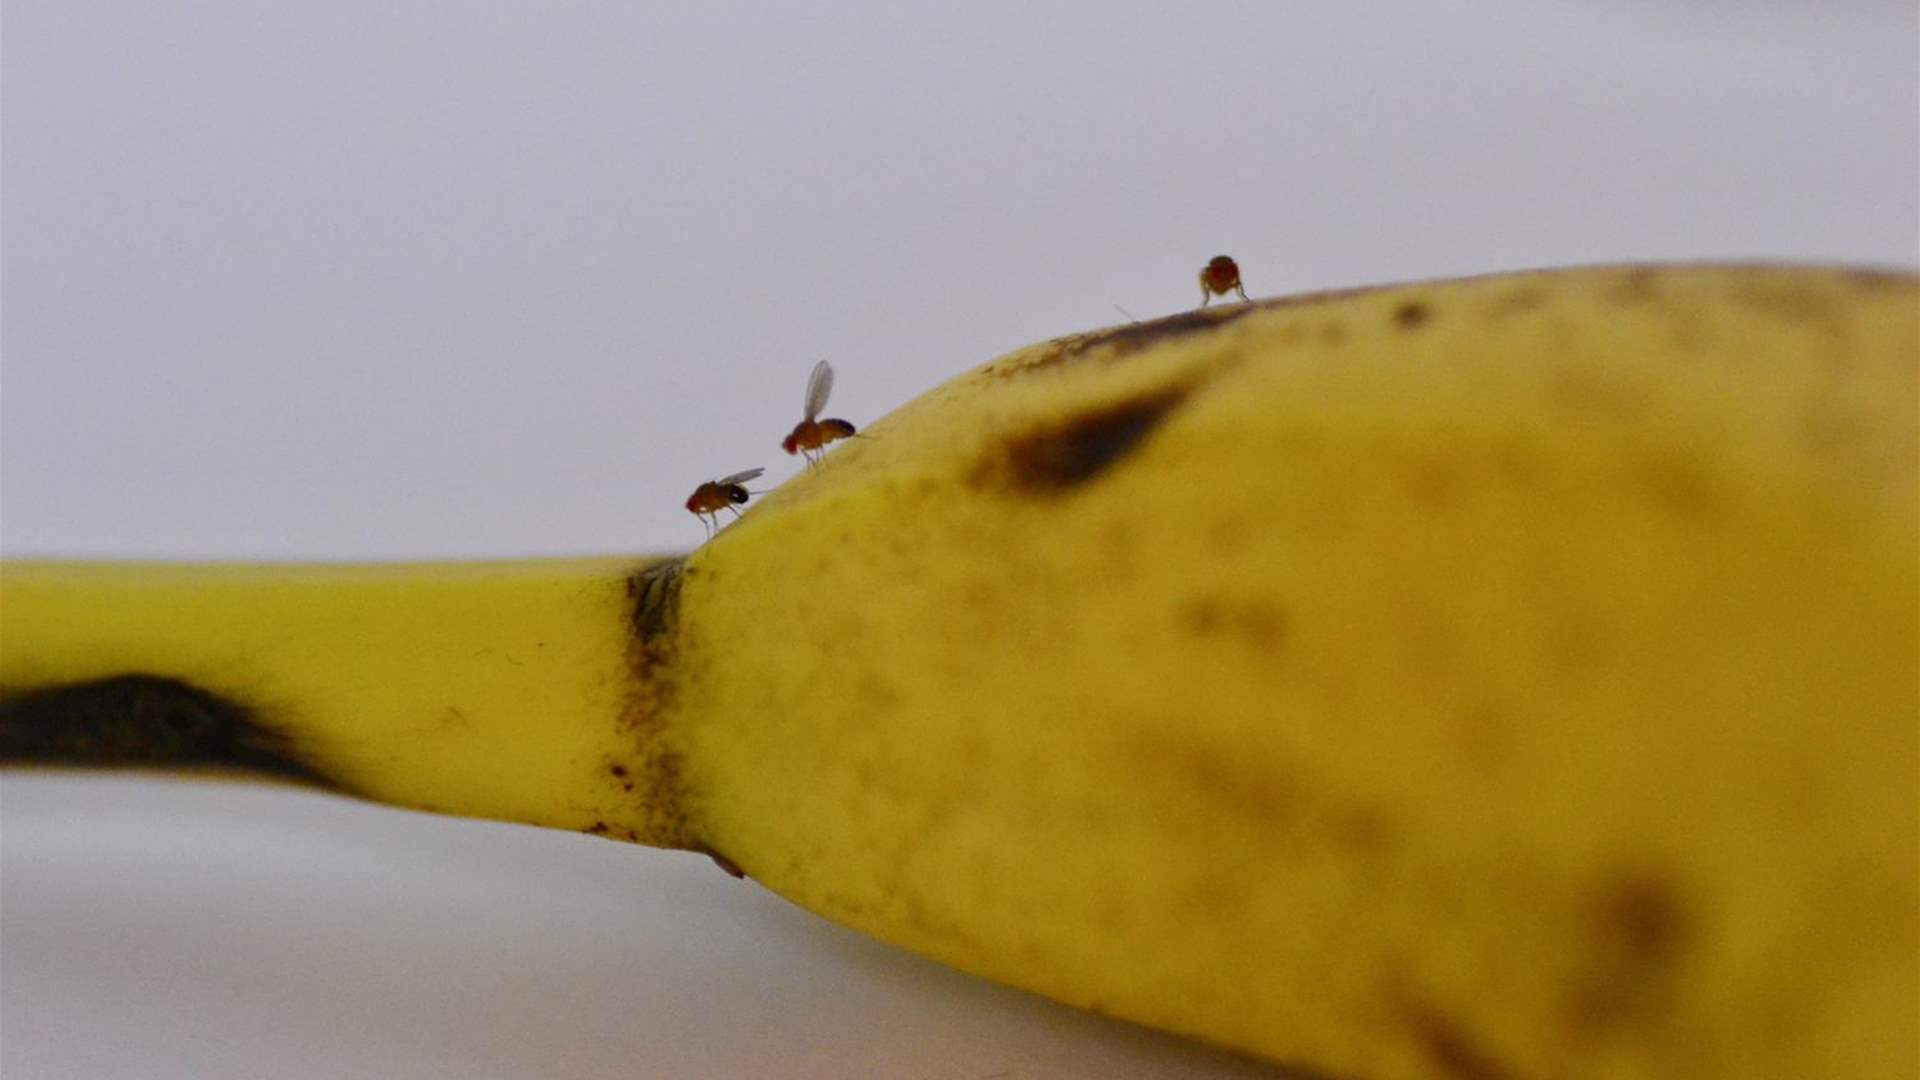 هل تريدون الحفاظ على الموز والتخلص من الذباب؟ اعتمدوا هذه الحيلة الفعّالة